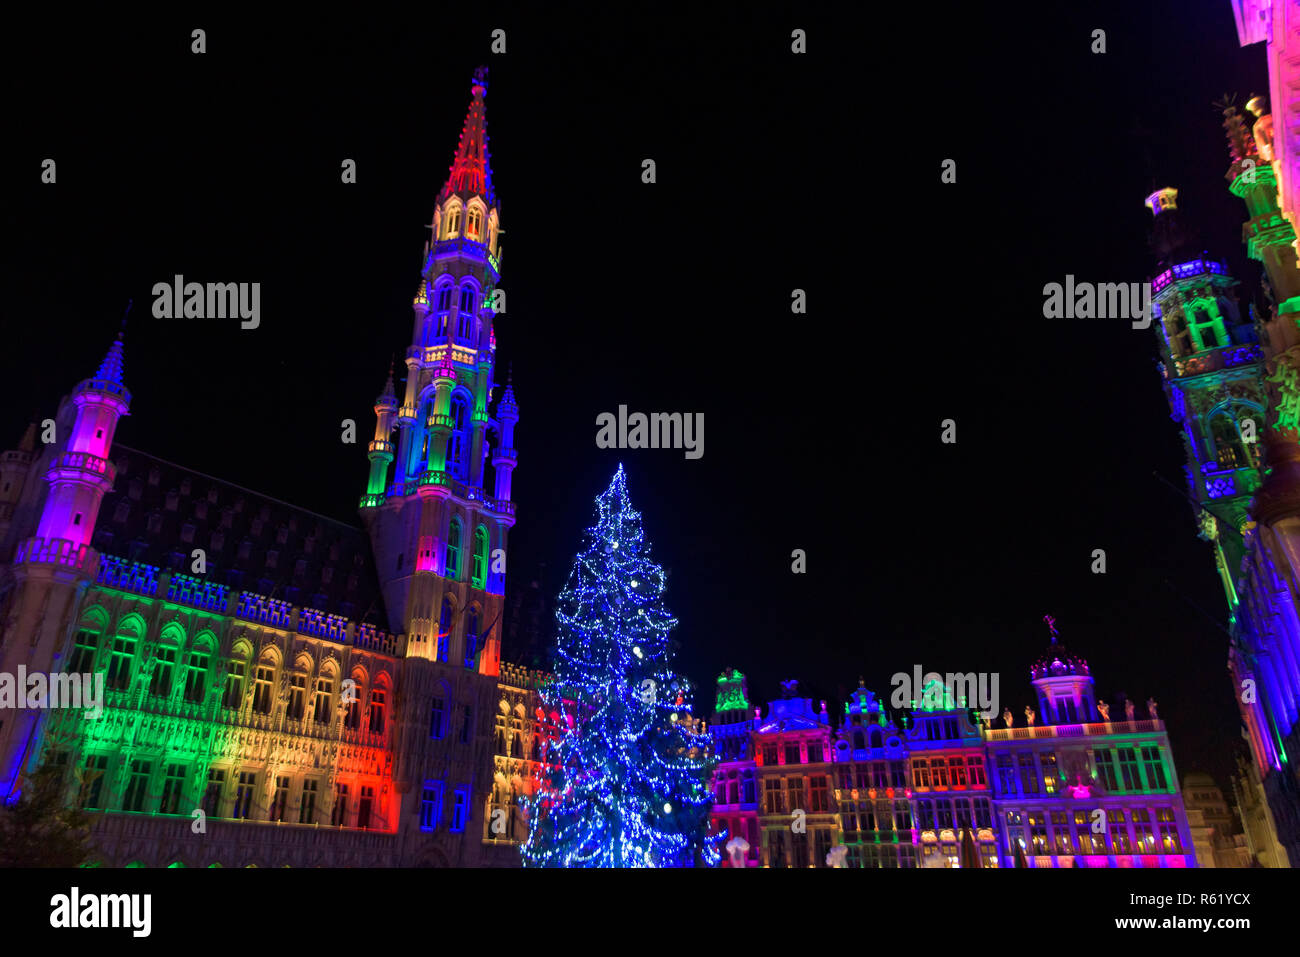 2018 Light show de marché de Noël à l'Hôtel de Ville, Grand-Place, Bruxelles, Belgique Banque D'Images